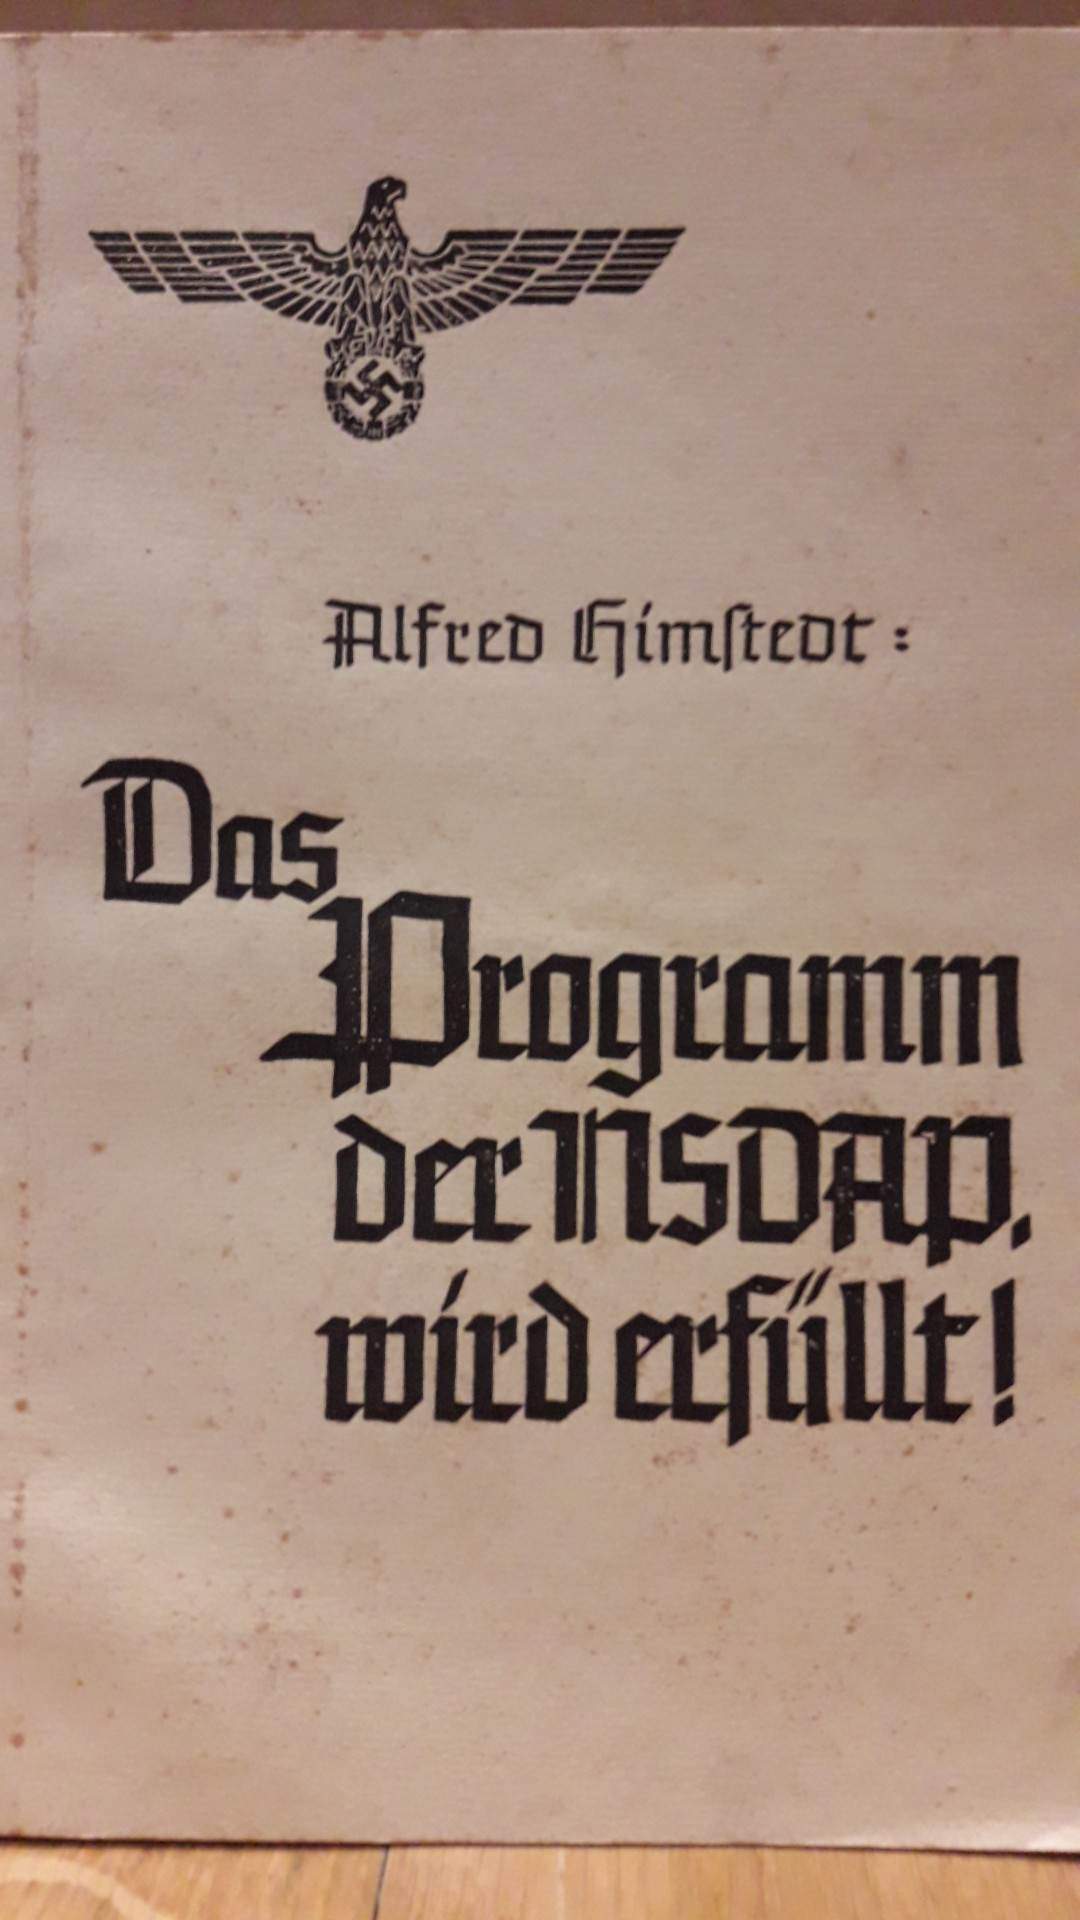 Das programm der NSDAP wird erfullt - Alfred Himstedt / 1939 - 77 blz - zeldzaam